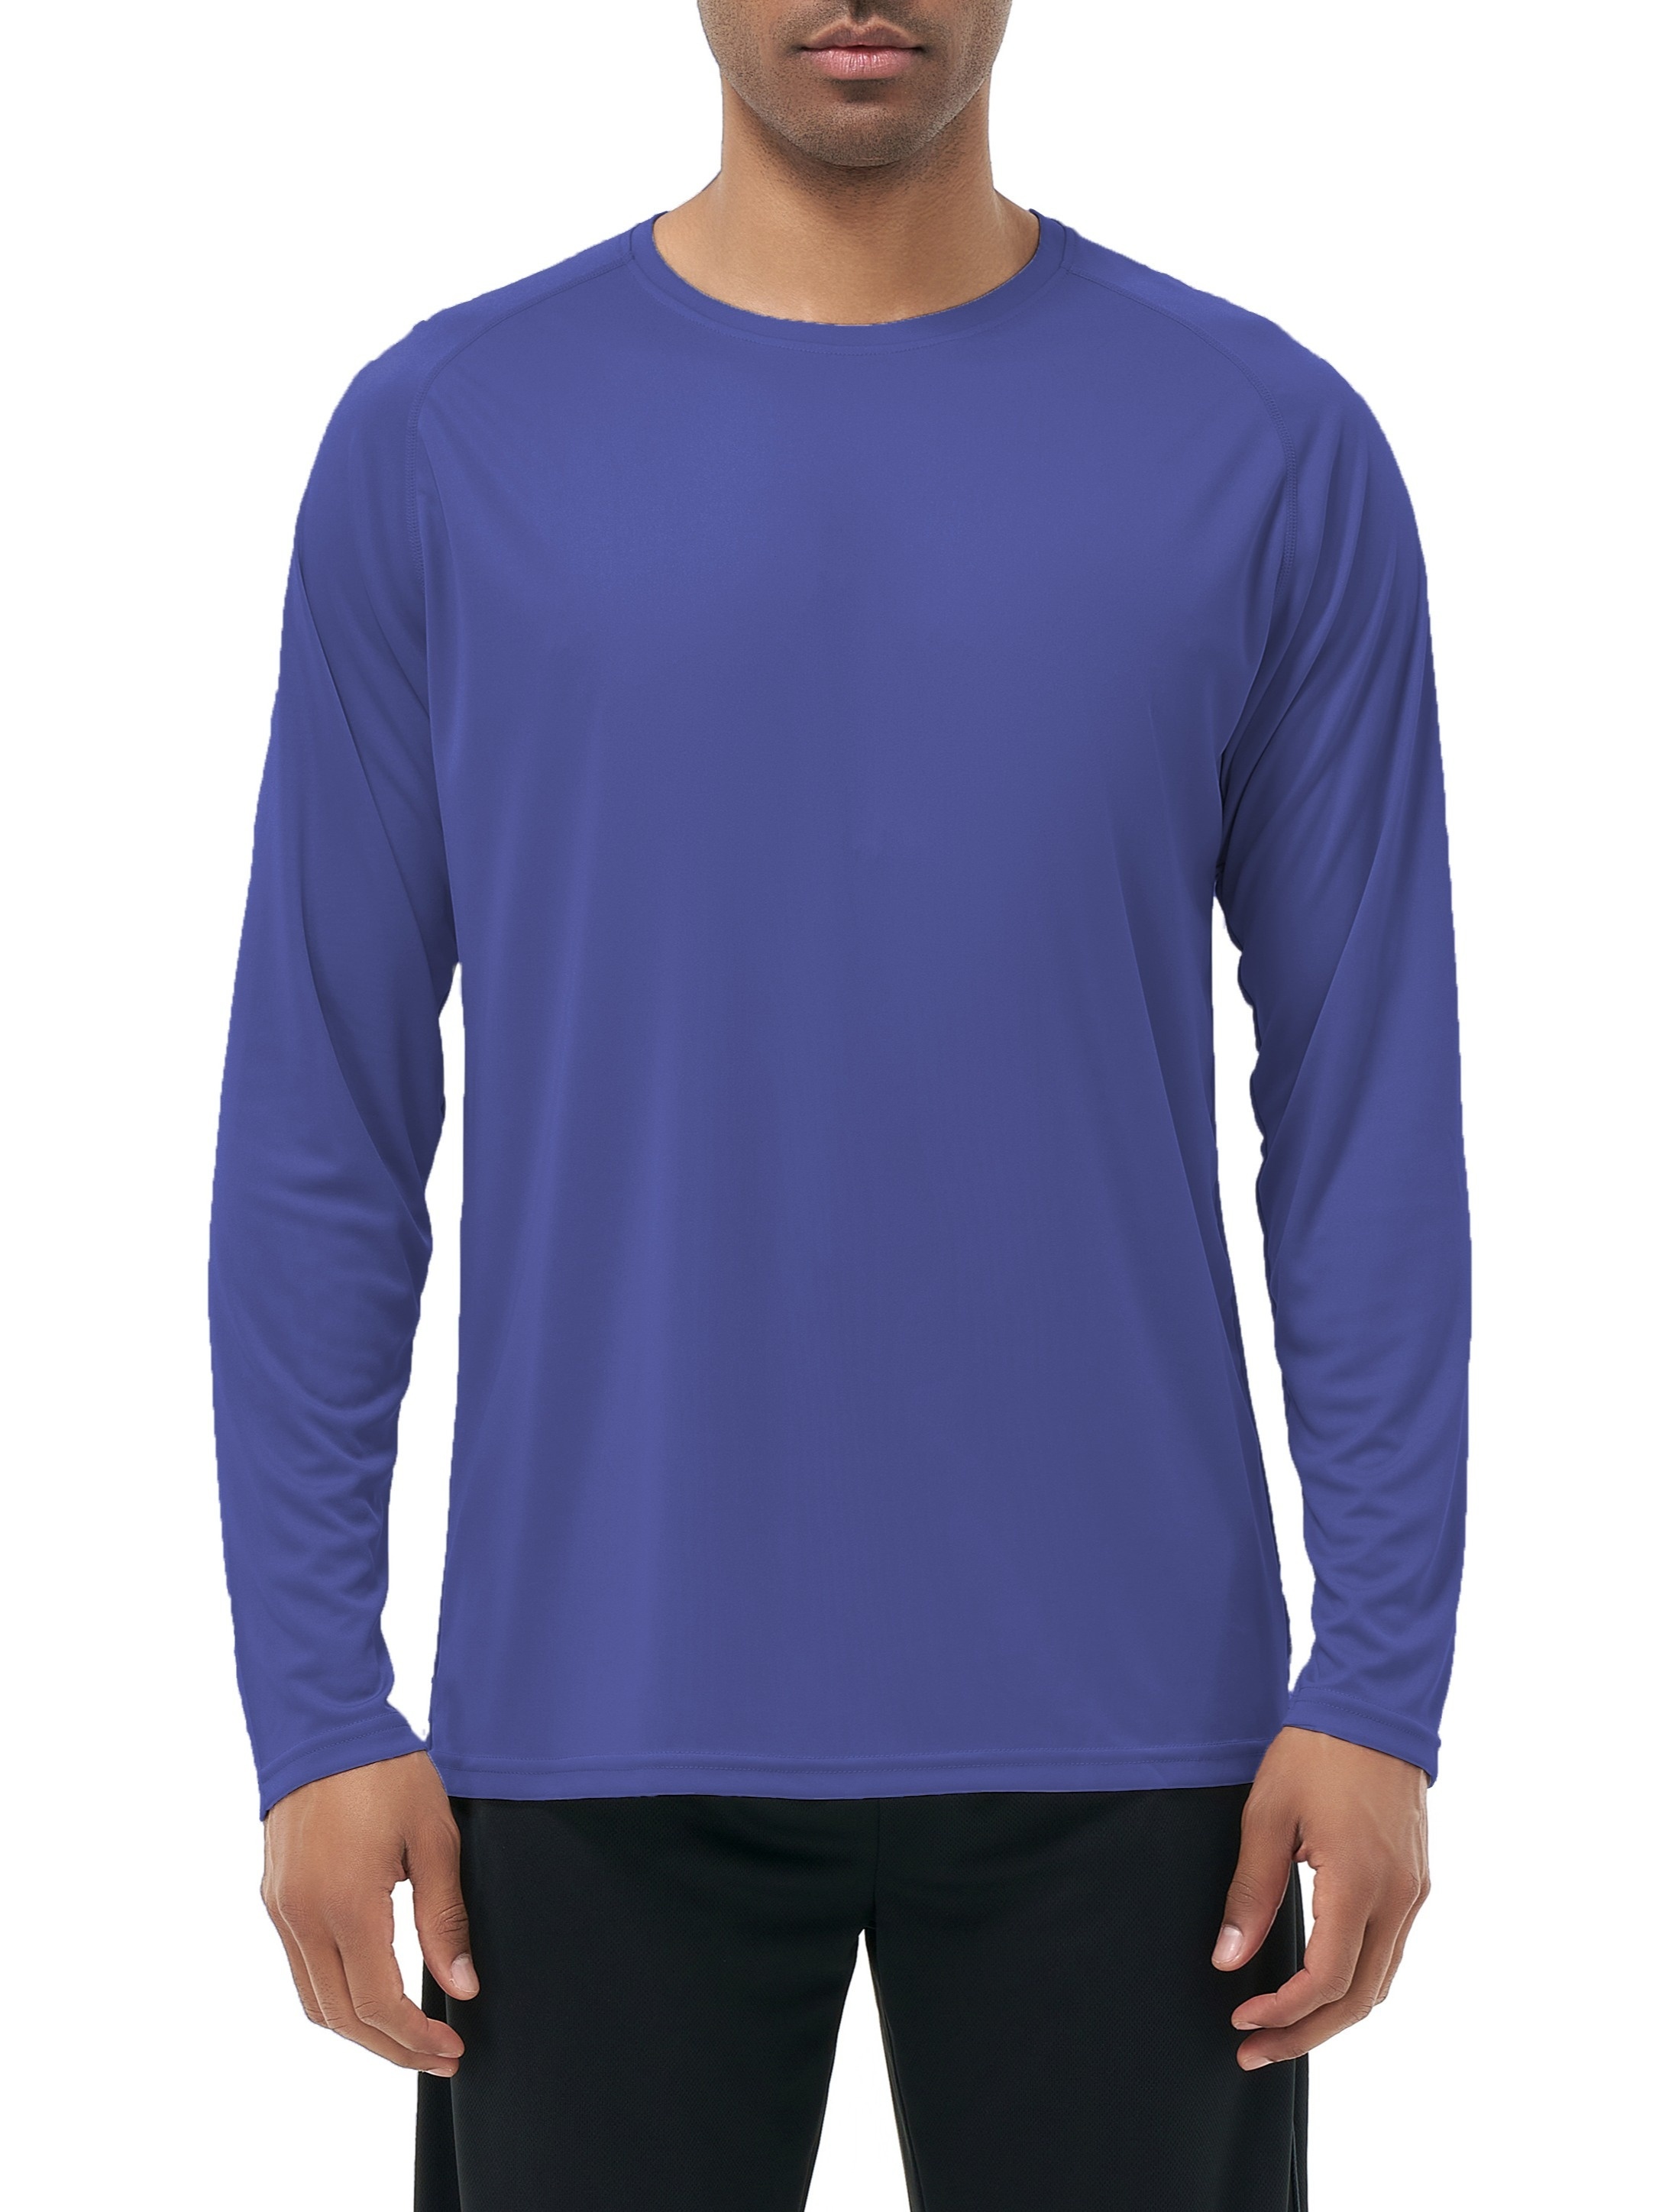  Long Sleeve Fishing T-Shirt for Men and Women, UPF 50